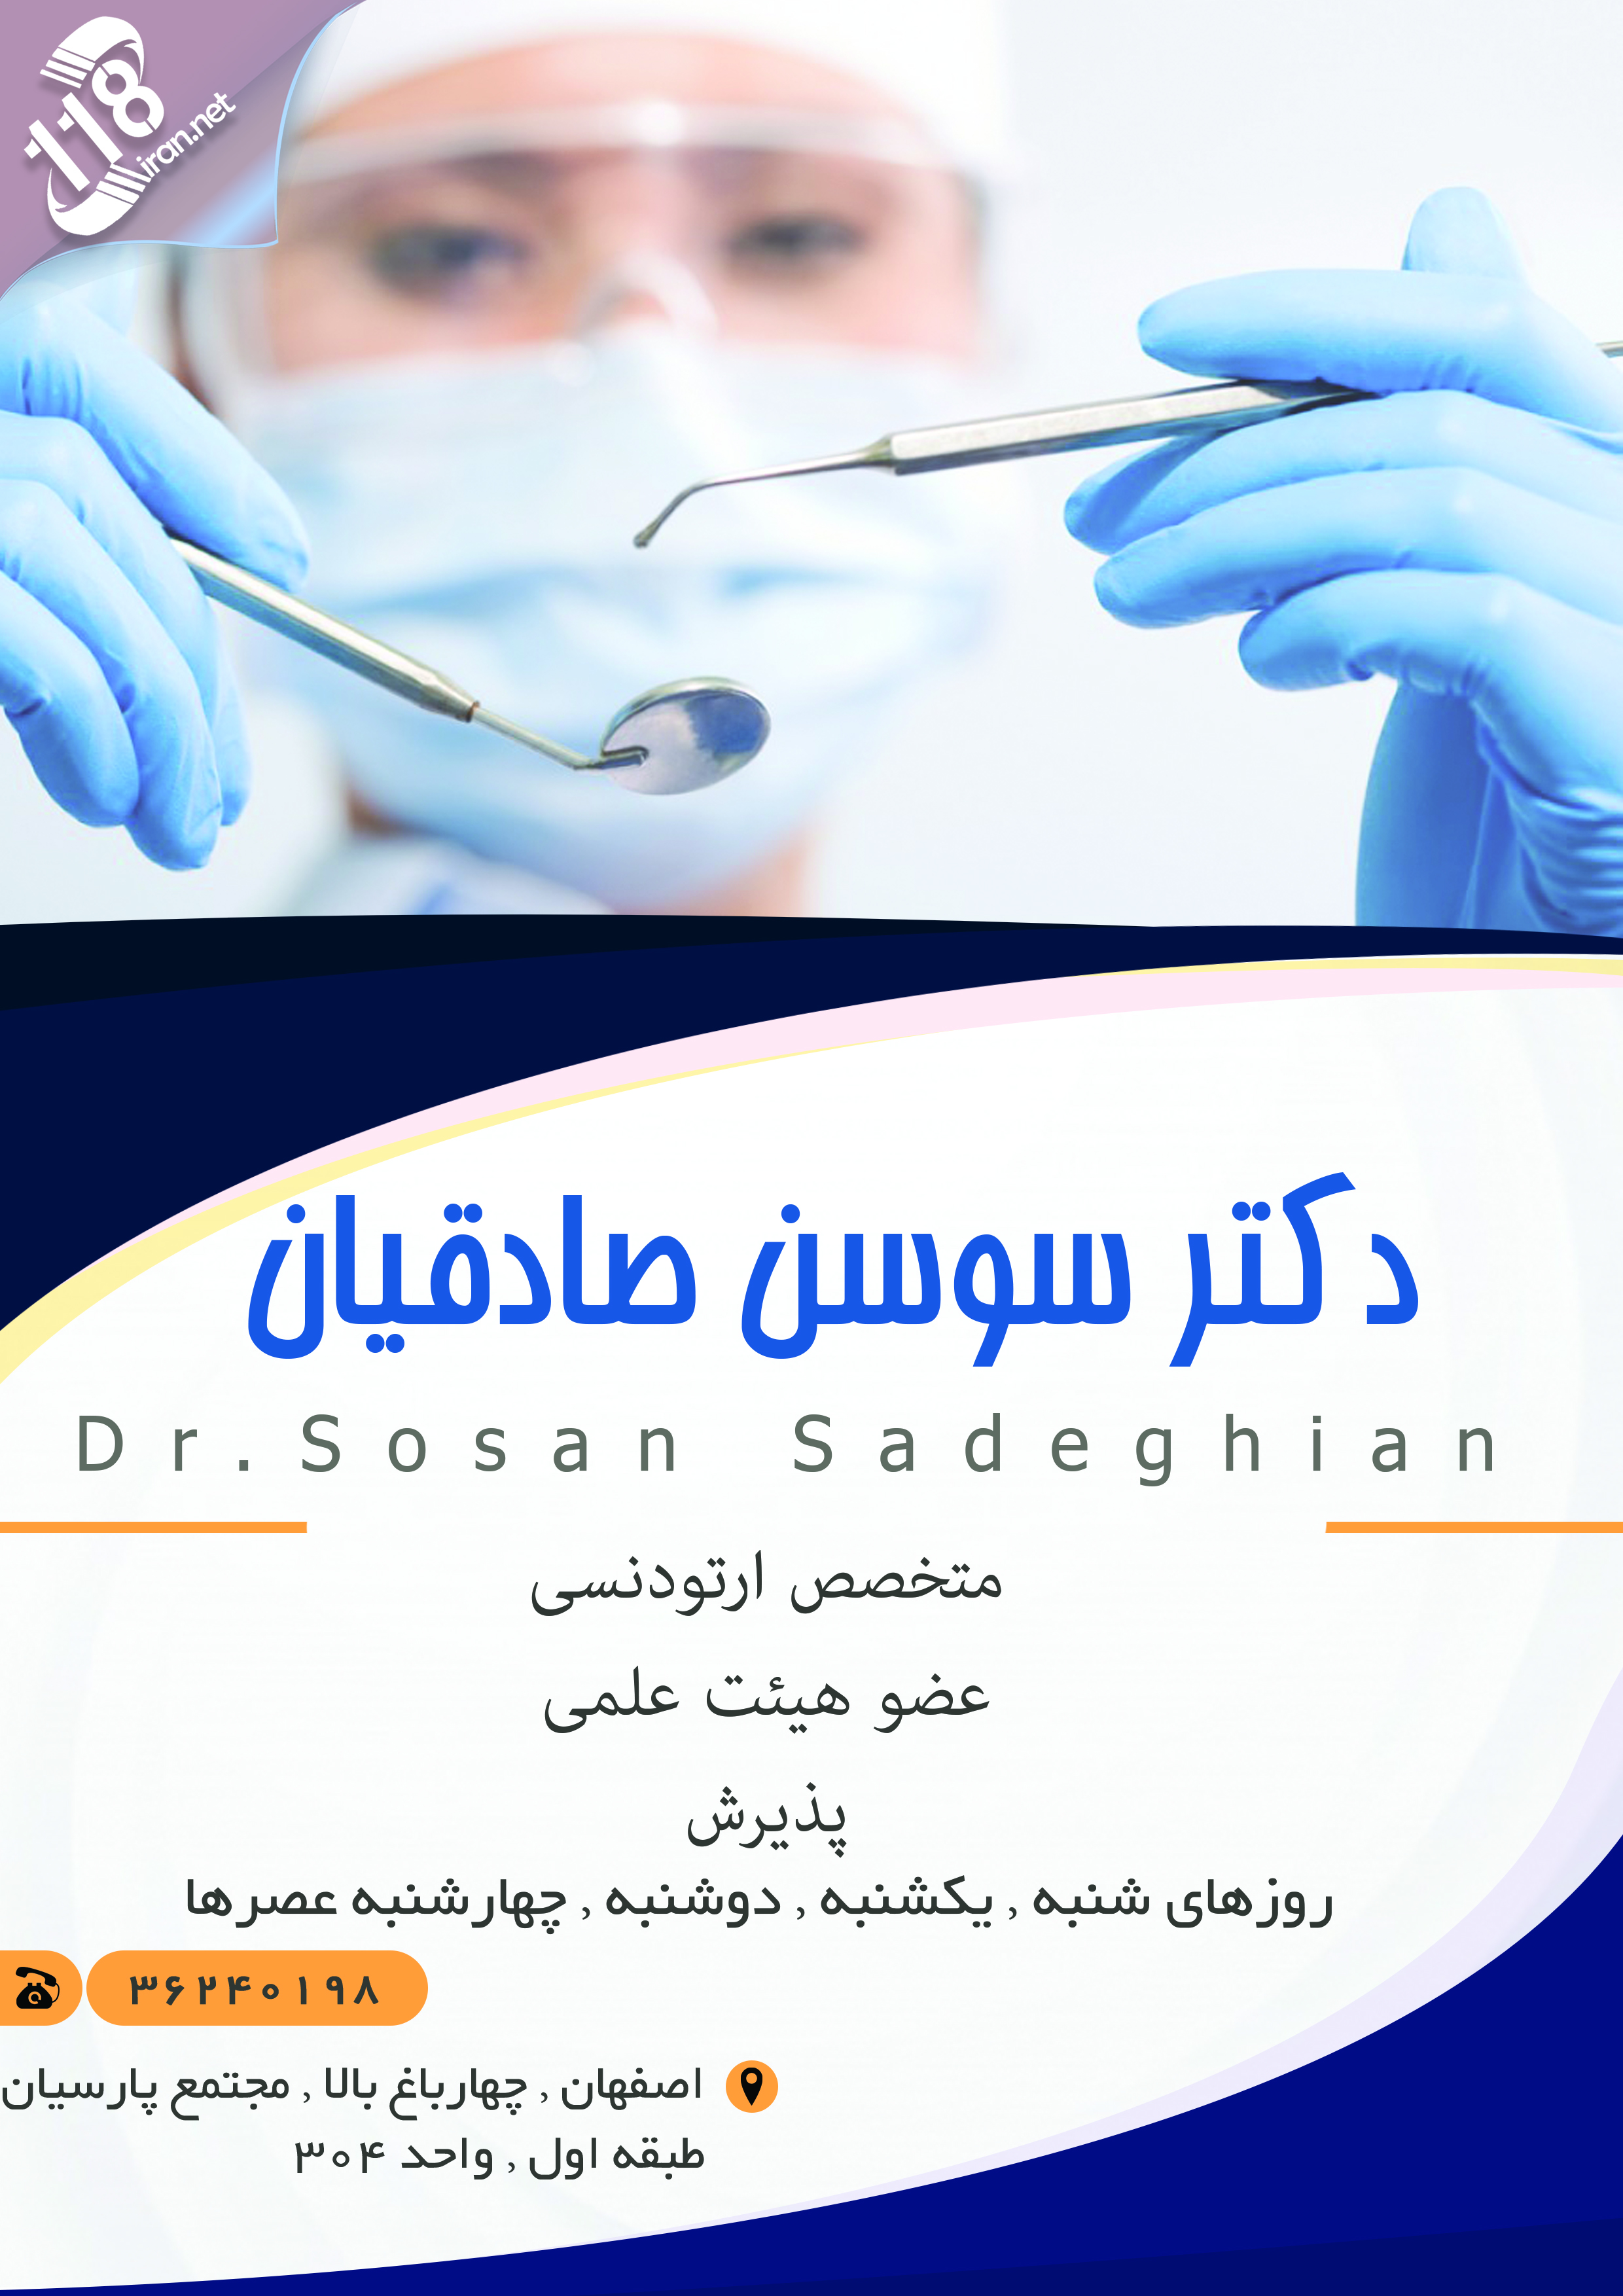 دکتر سوسن صادقیان در اصفهان